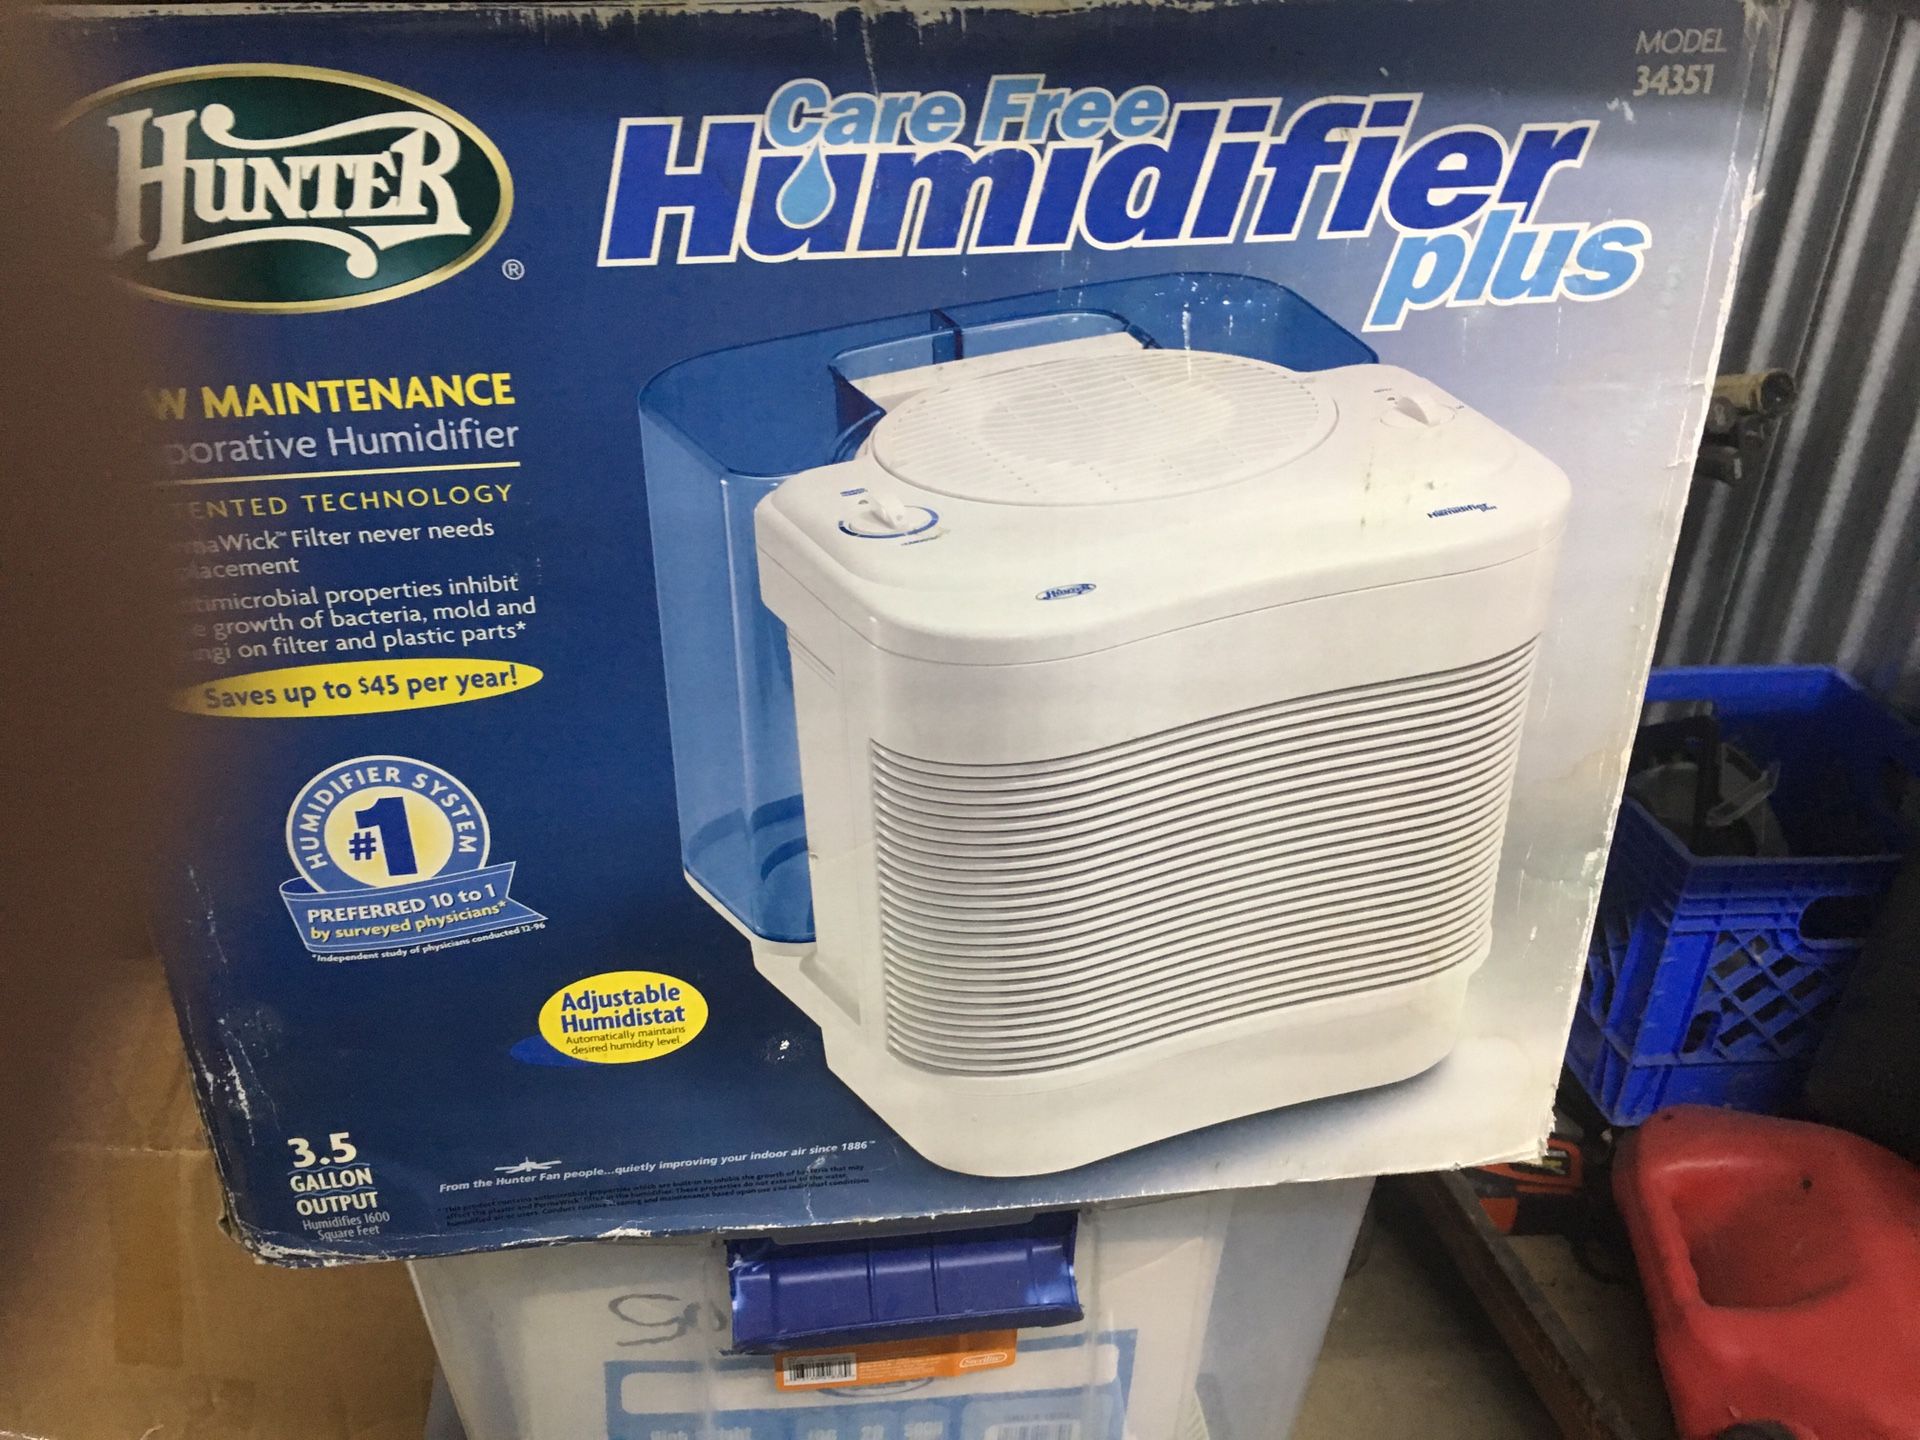 Hunter care free humidifier plus $20 brand new still in box